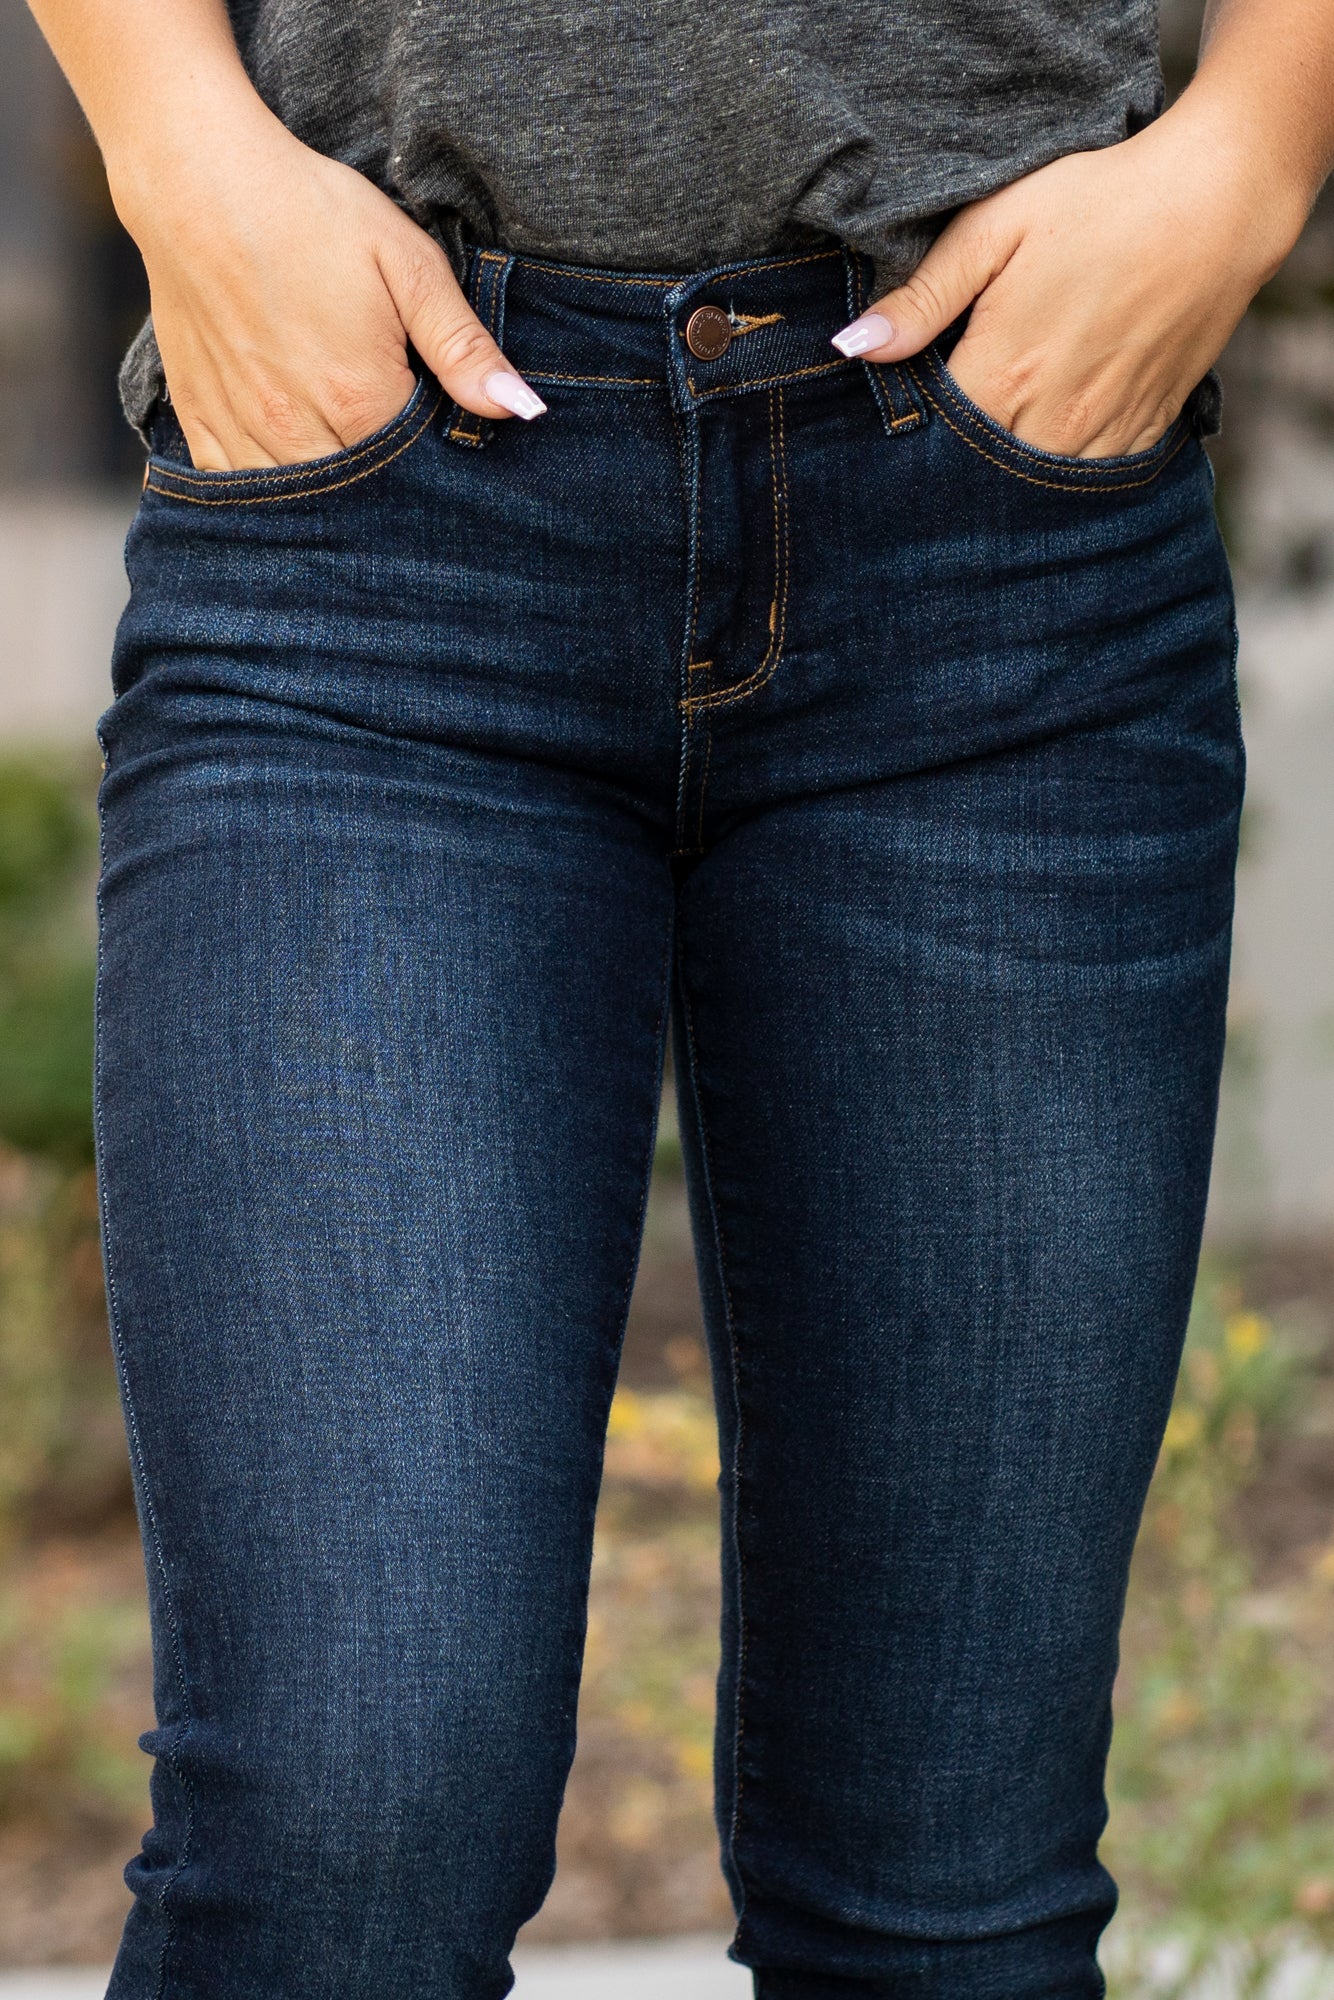 Jeans Skinny By J Jill Size: 16